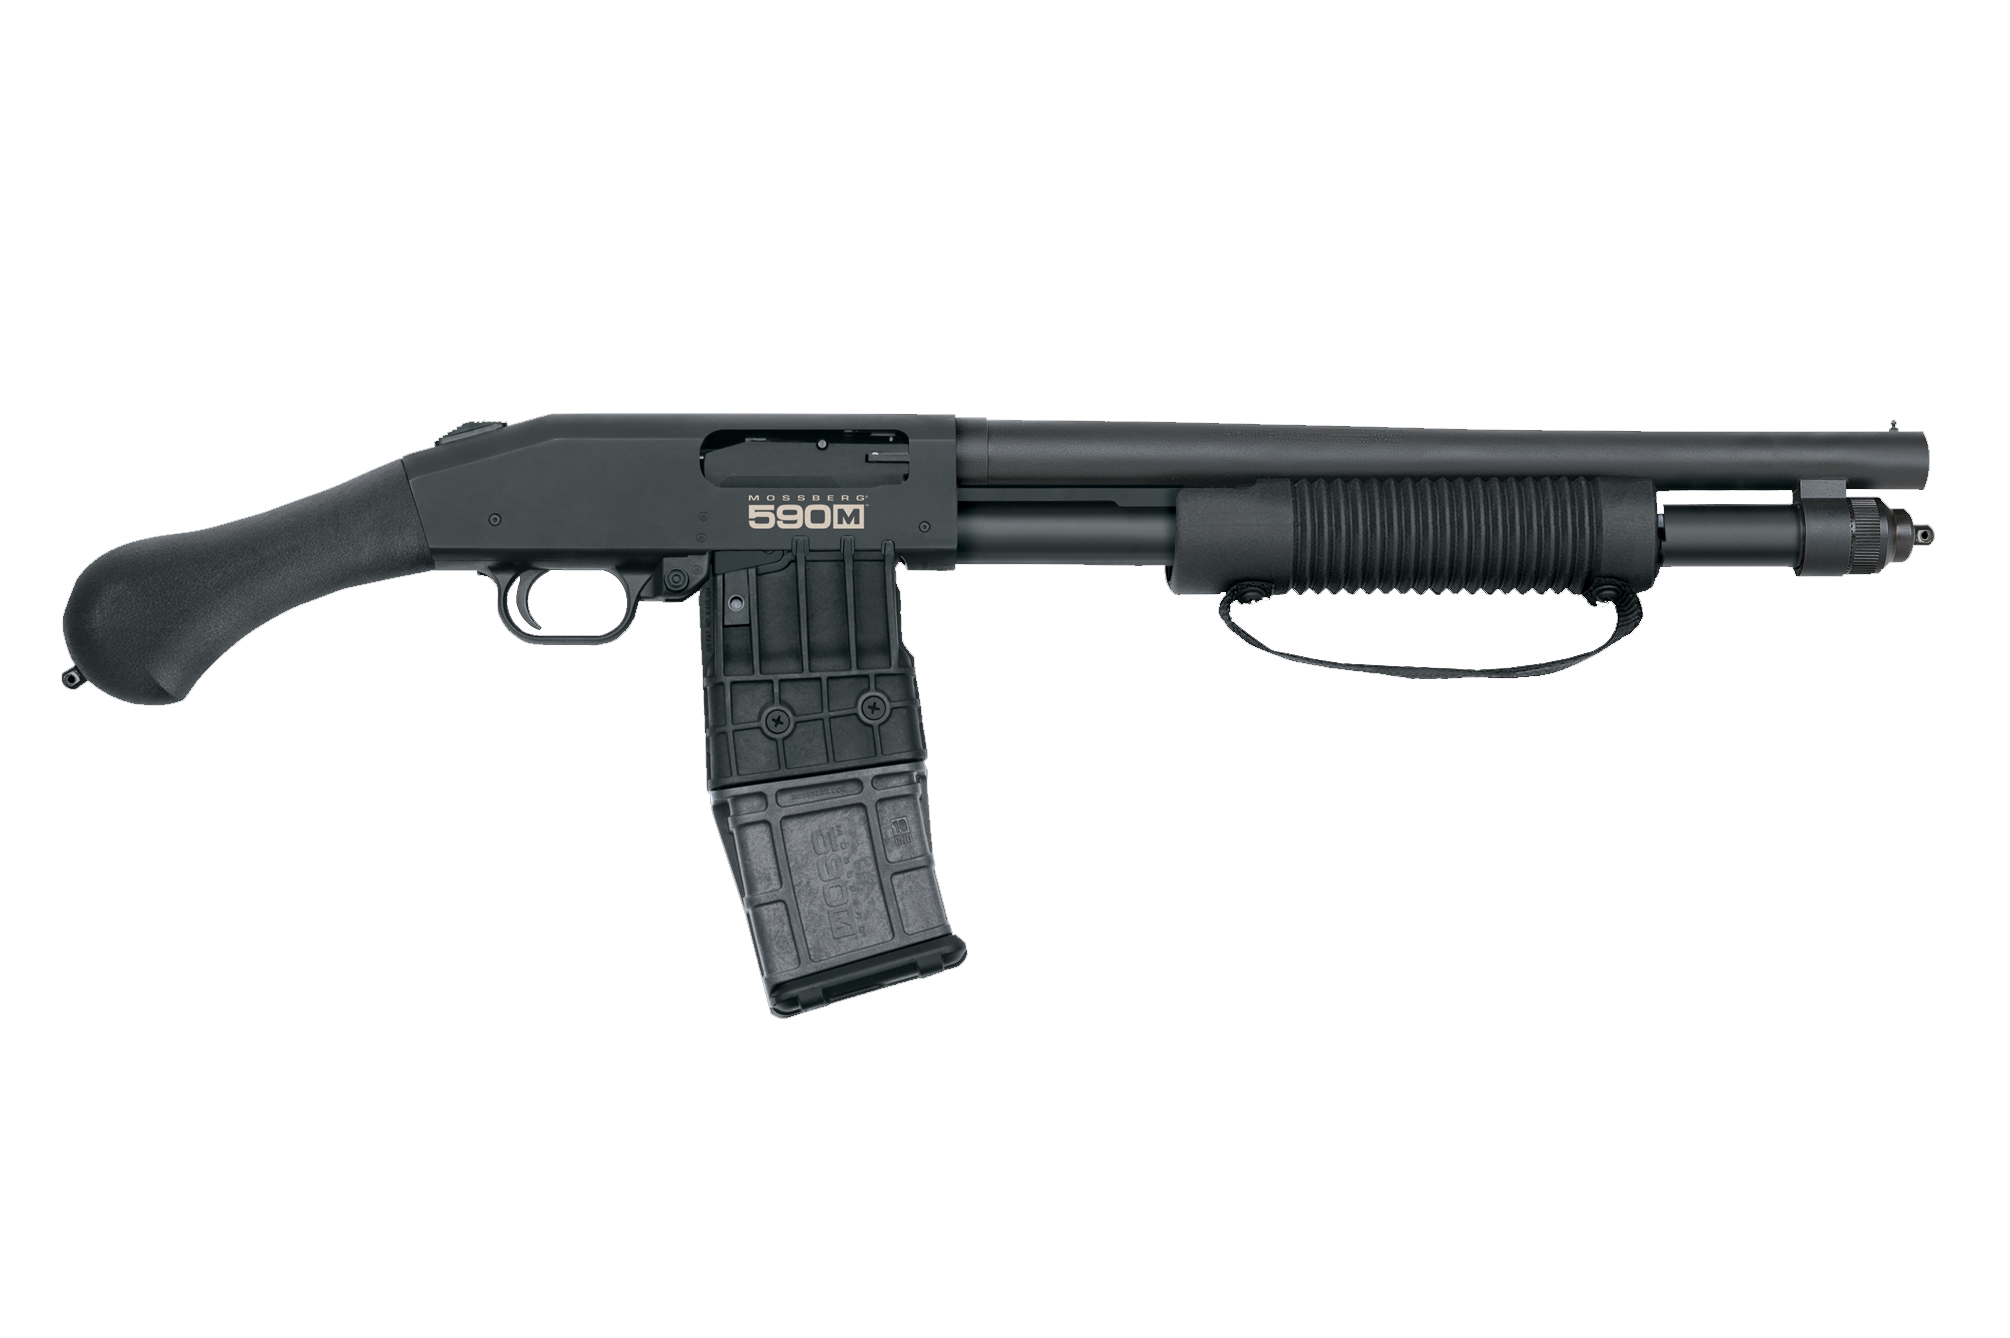 mossberg-introduces-12-gauge-magazine-fed-shockwave-recoil